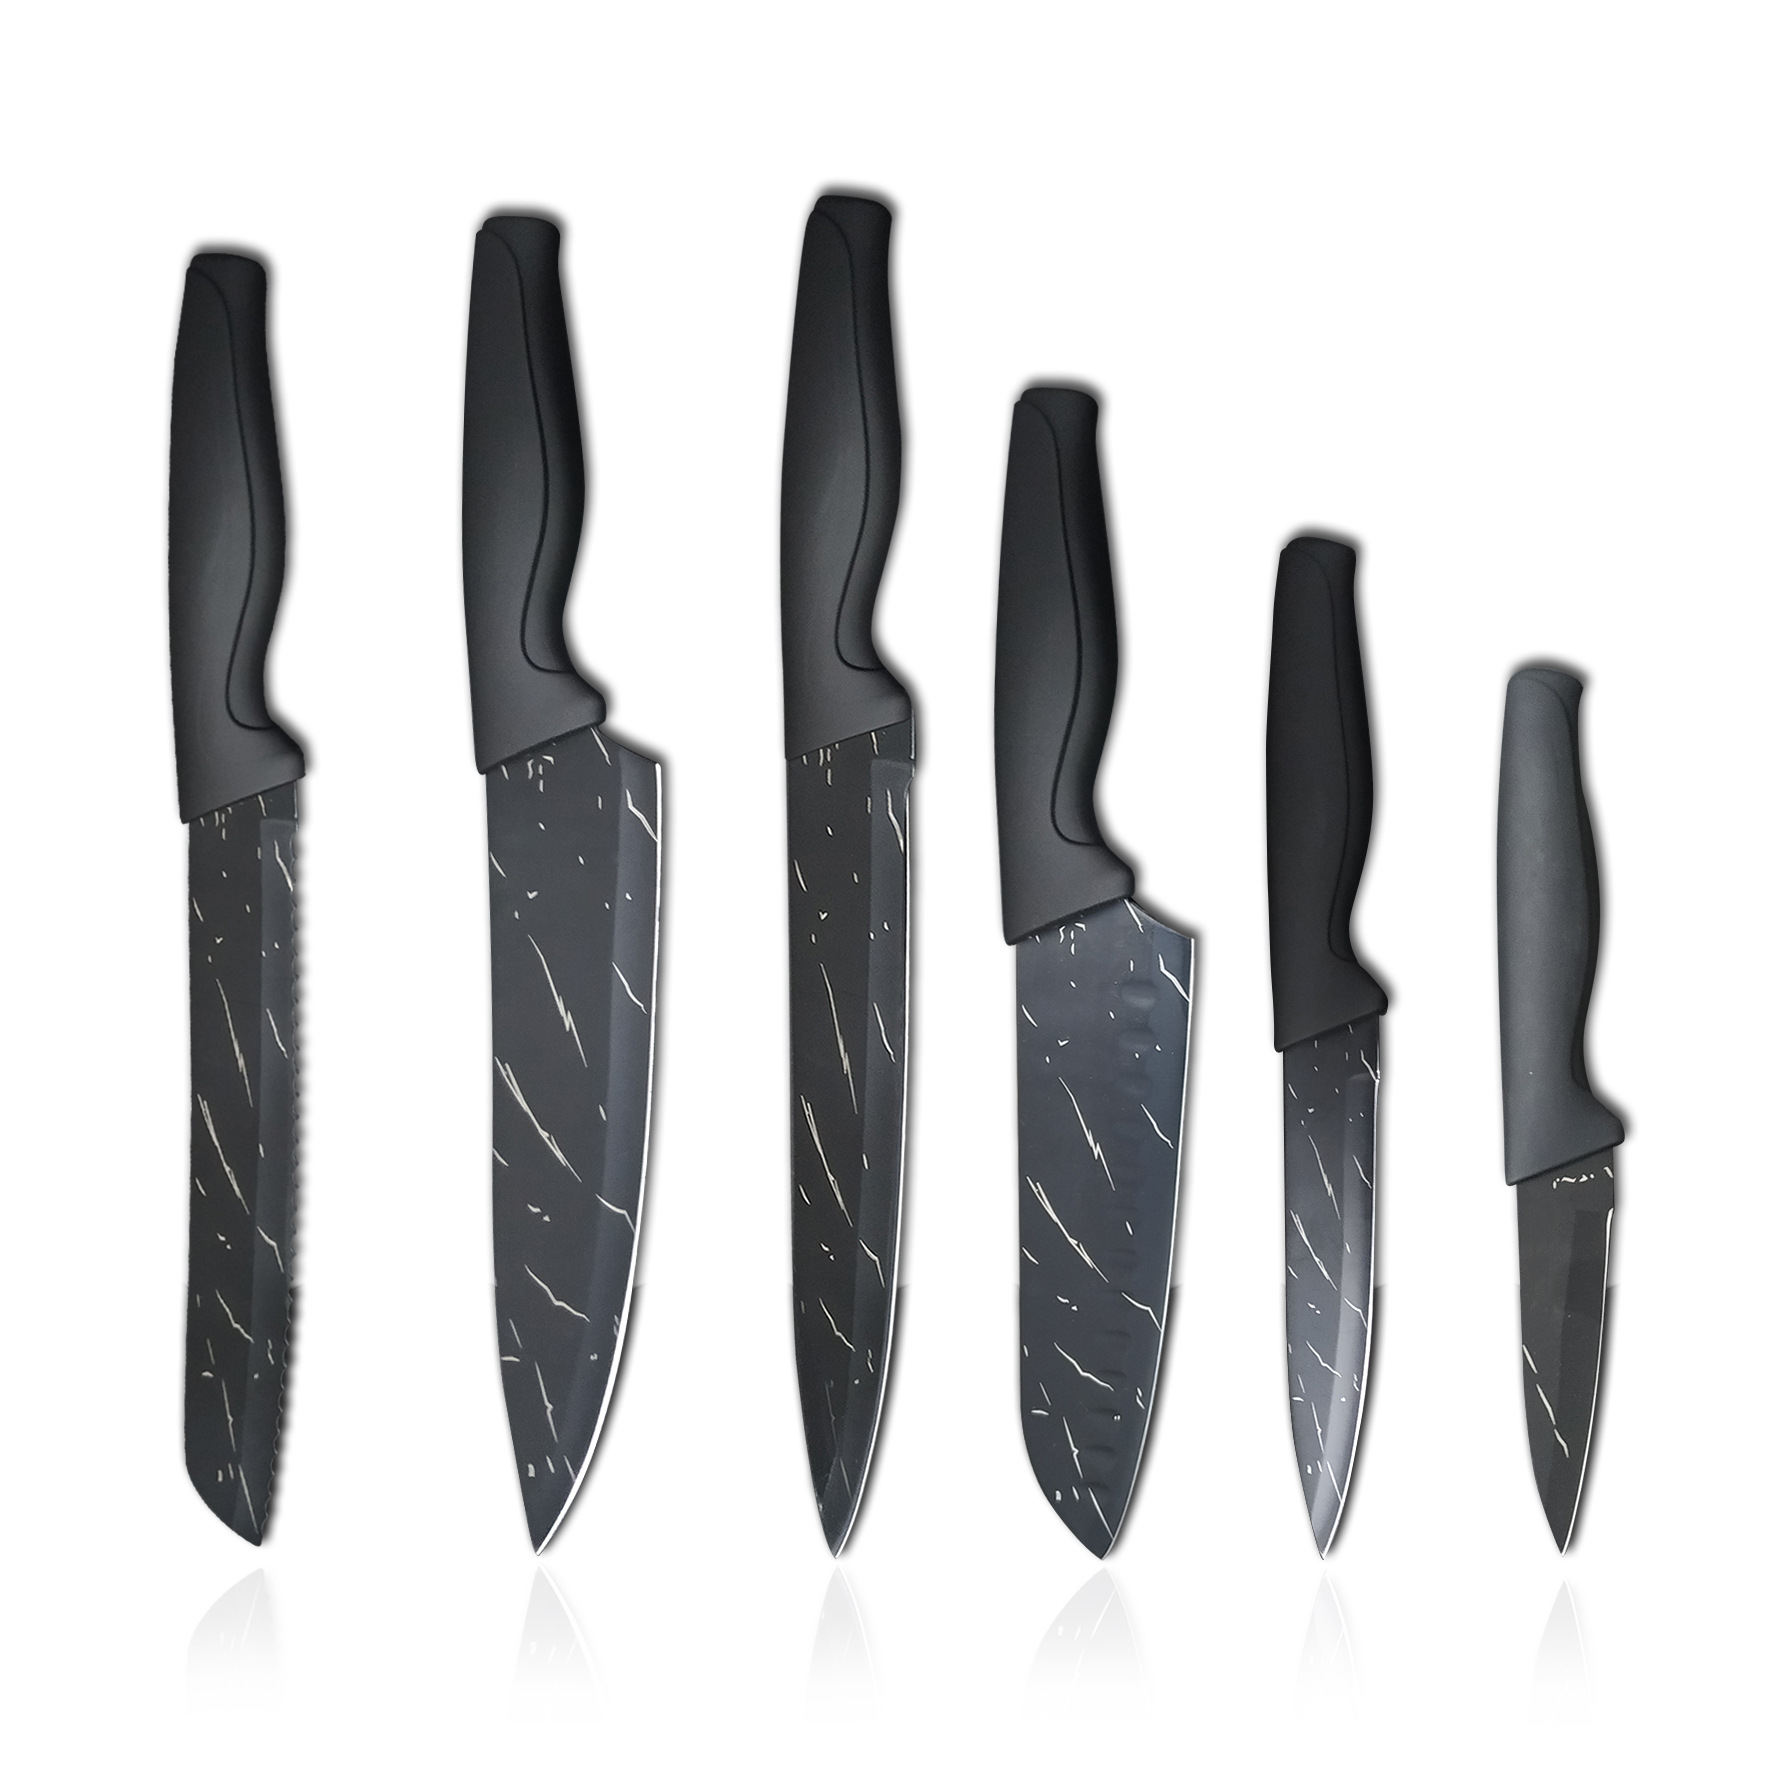 [Manufacturer] Stainless Steel Sharp Black Steel Kitchen Suit Black Blade Knife Household Kitchen Knife Slice Kitchen Fruit Knife